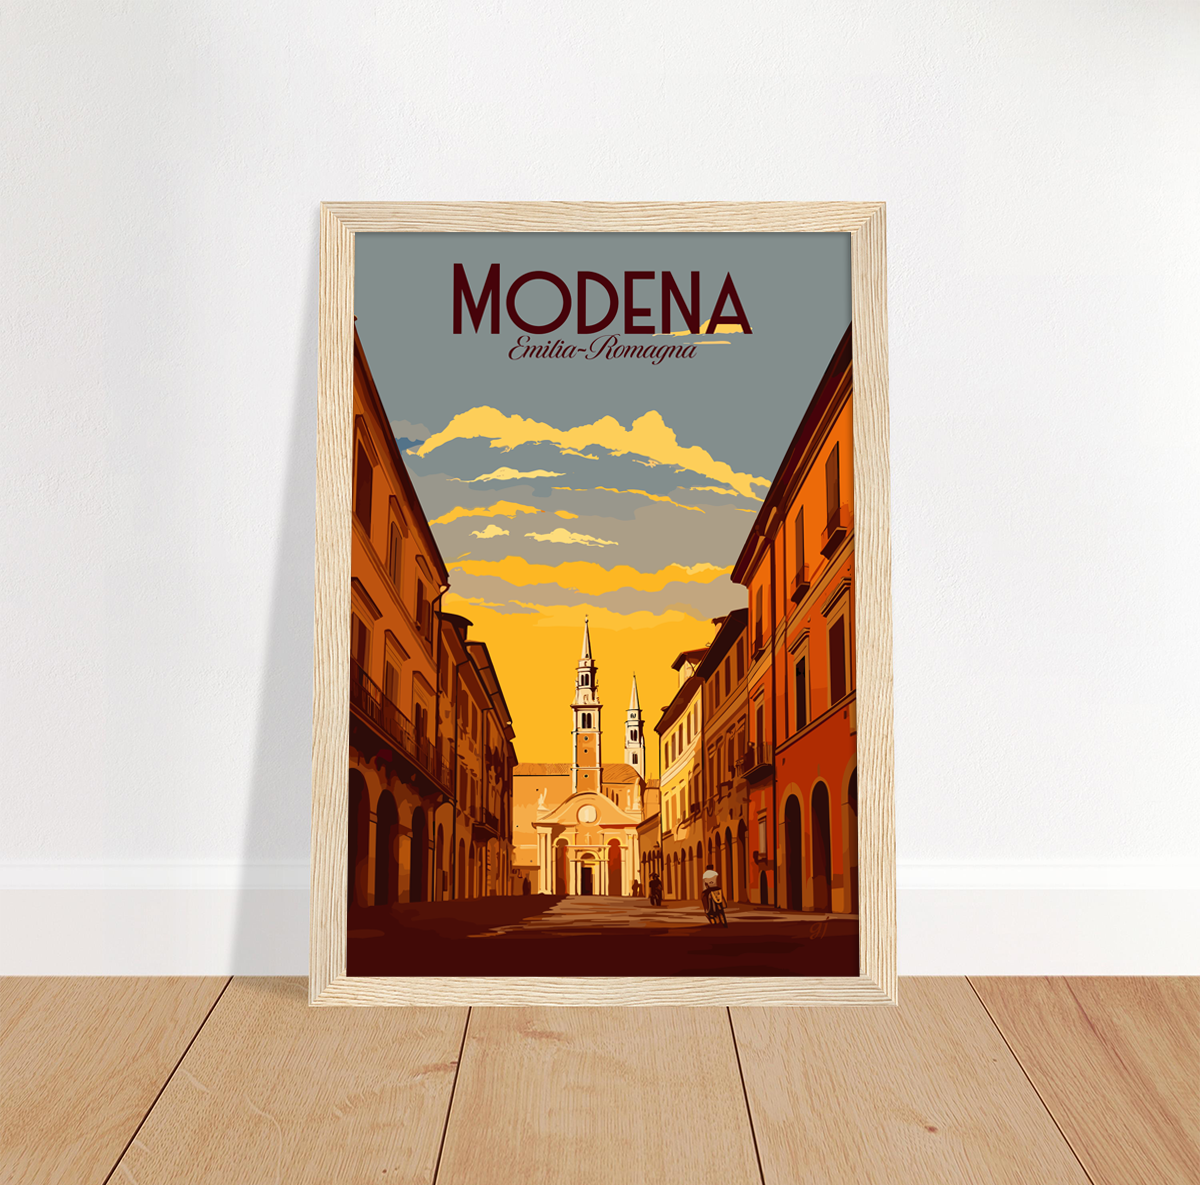 Modena poster by bon voyage design